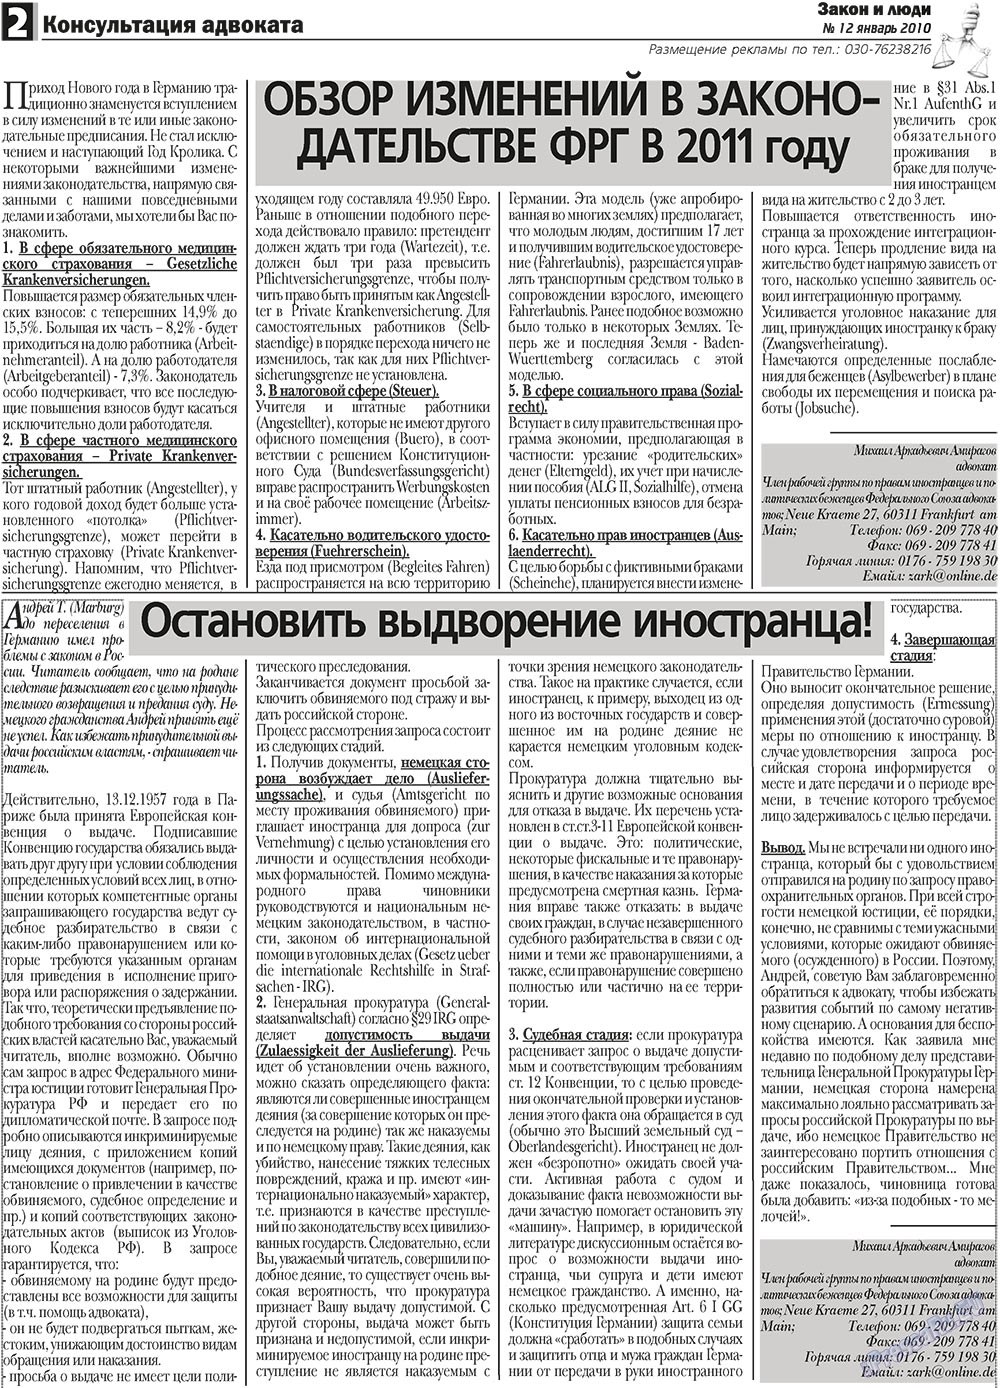 Закон и люди, газета. 2011 №1 стр.2